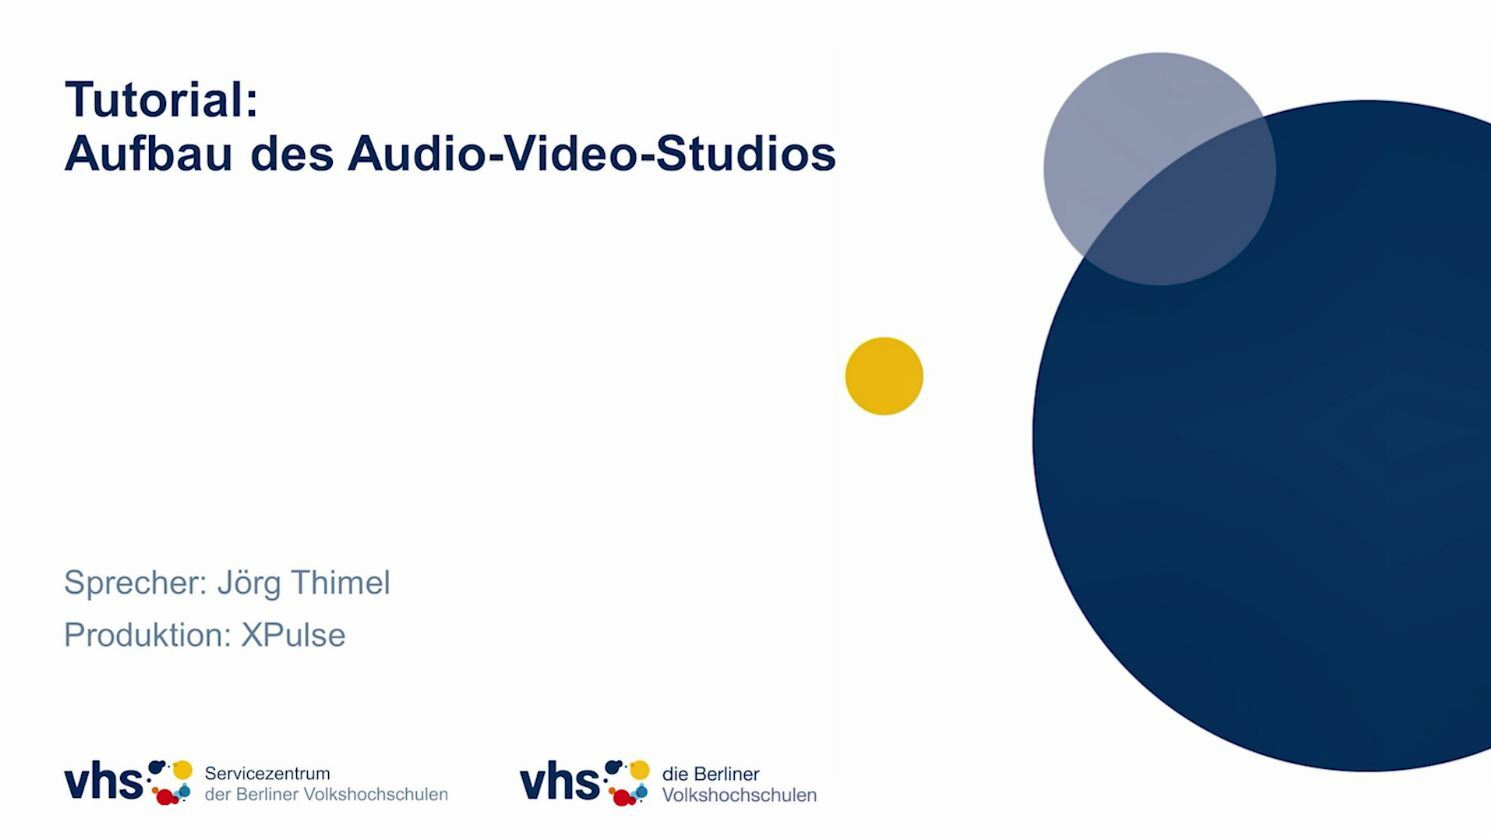 Startbild für das Tutorial zum Aufbau des Audio-Video-Studios